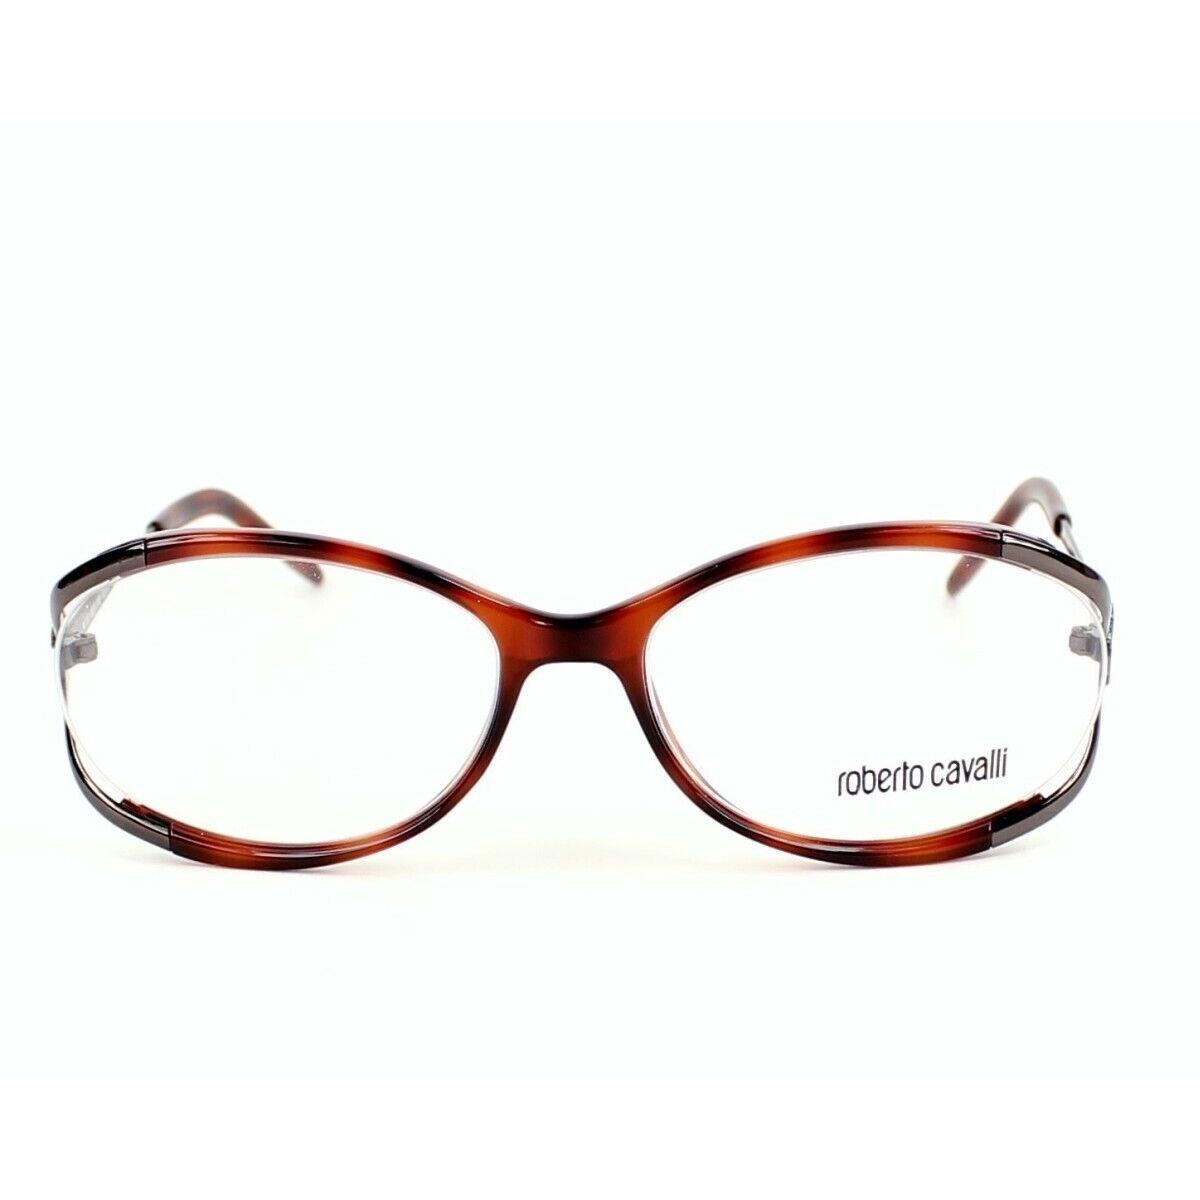 Roberto Cavalli Cavansite 498 Tortoise 052 Plastic Eyeglasses Frame 54-16-130 RX